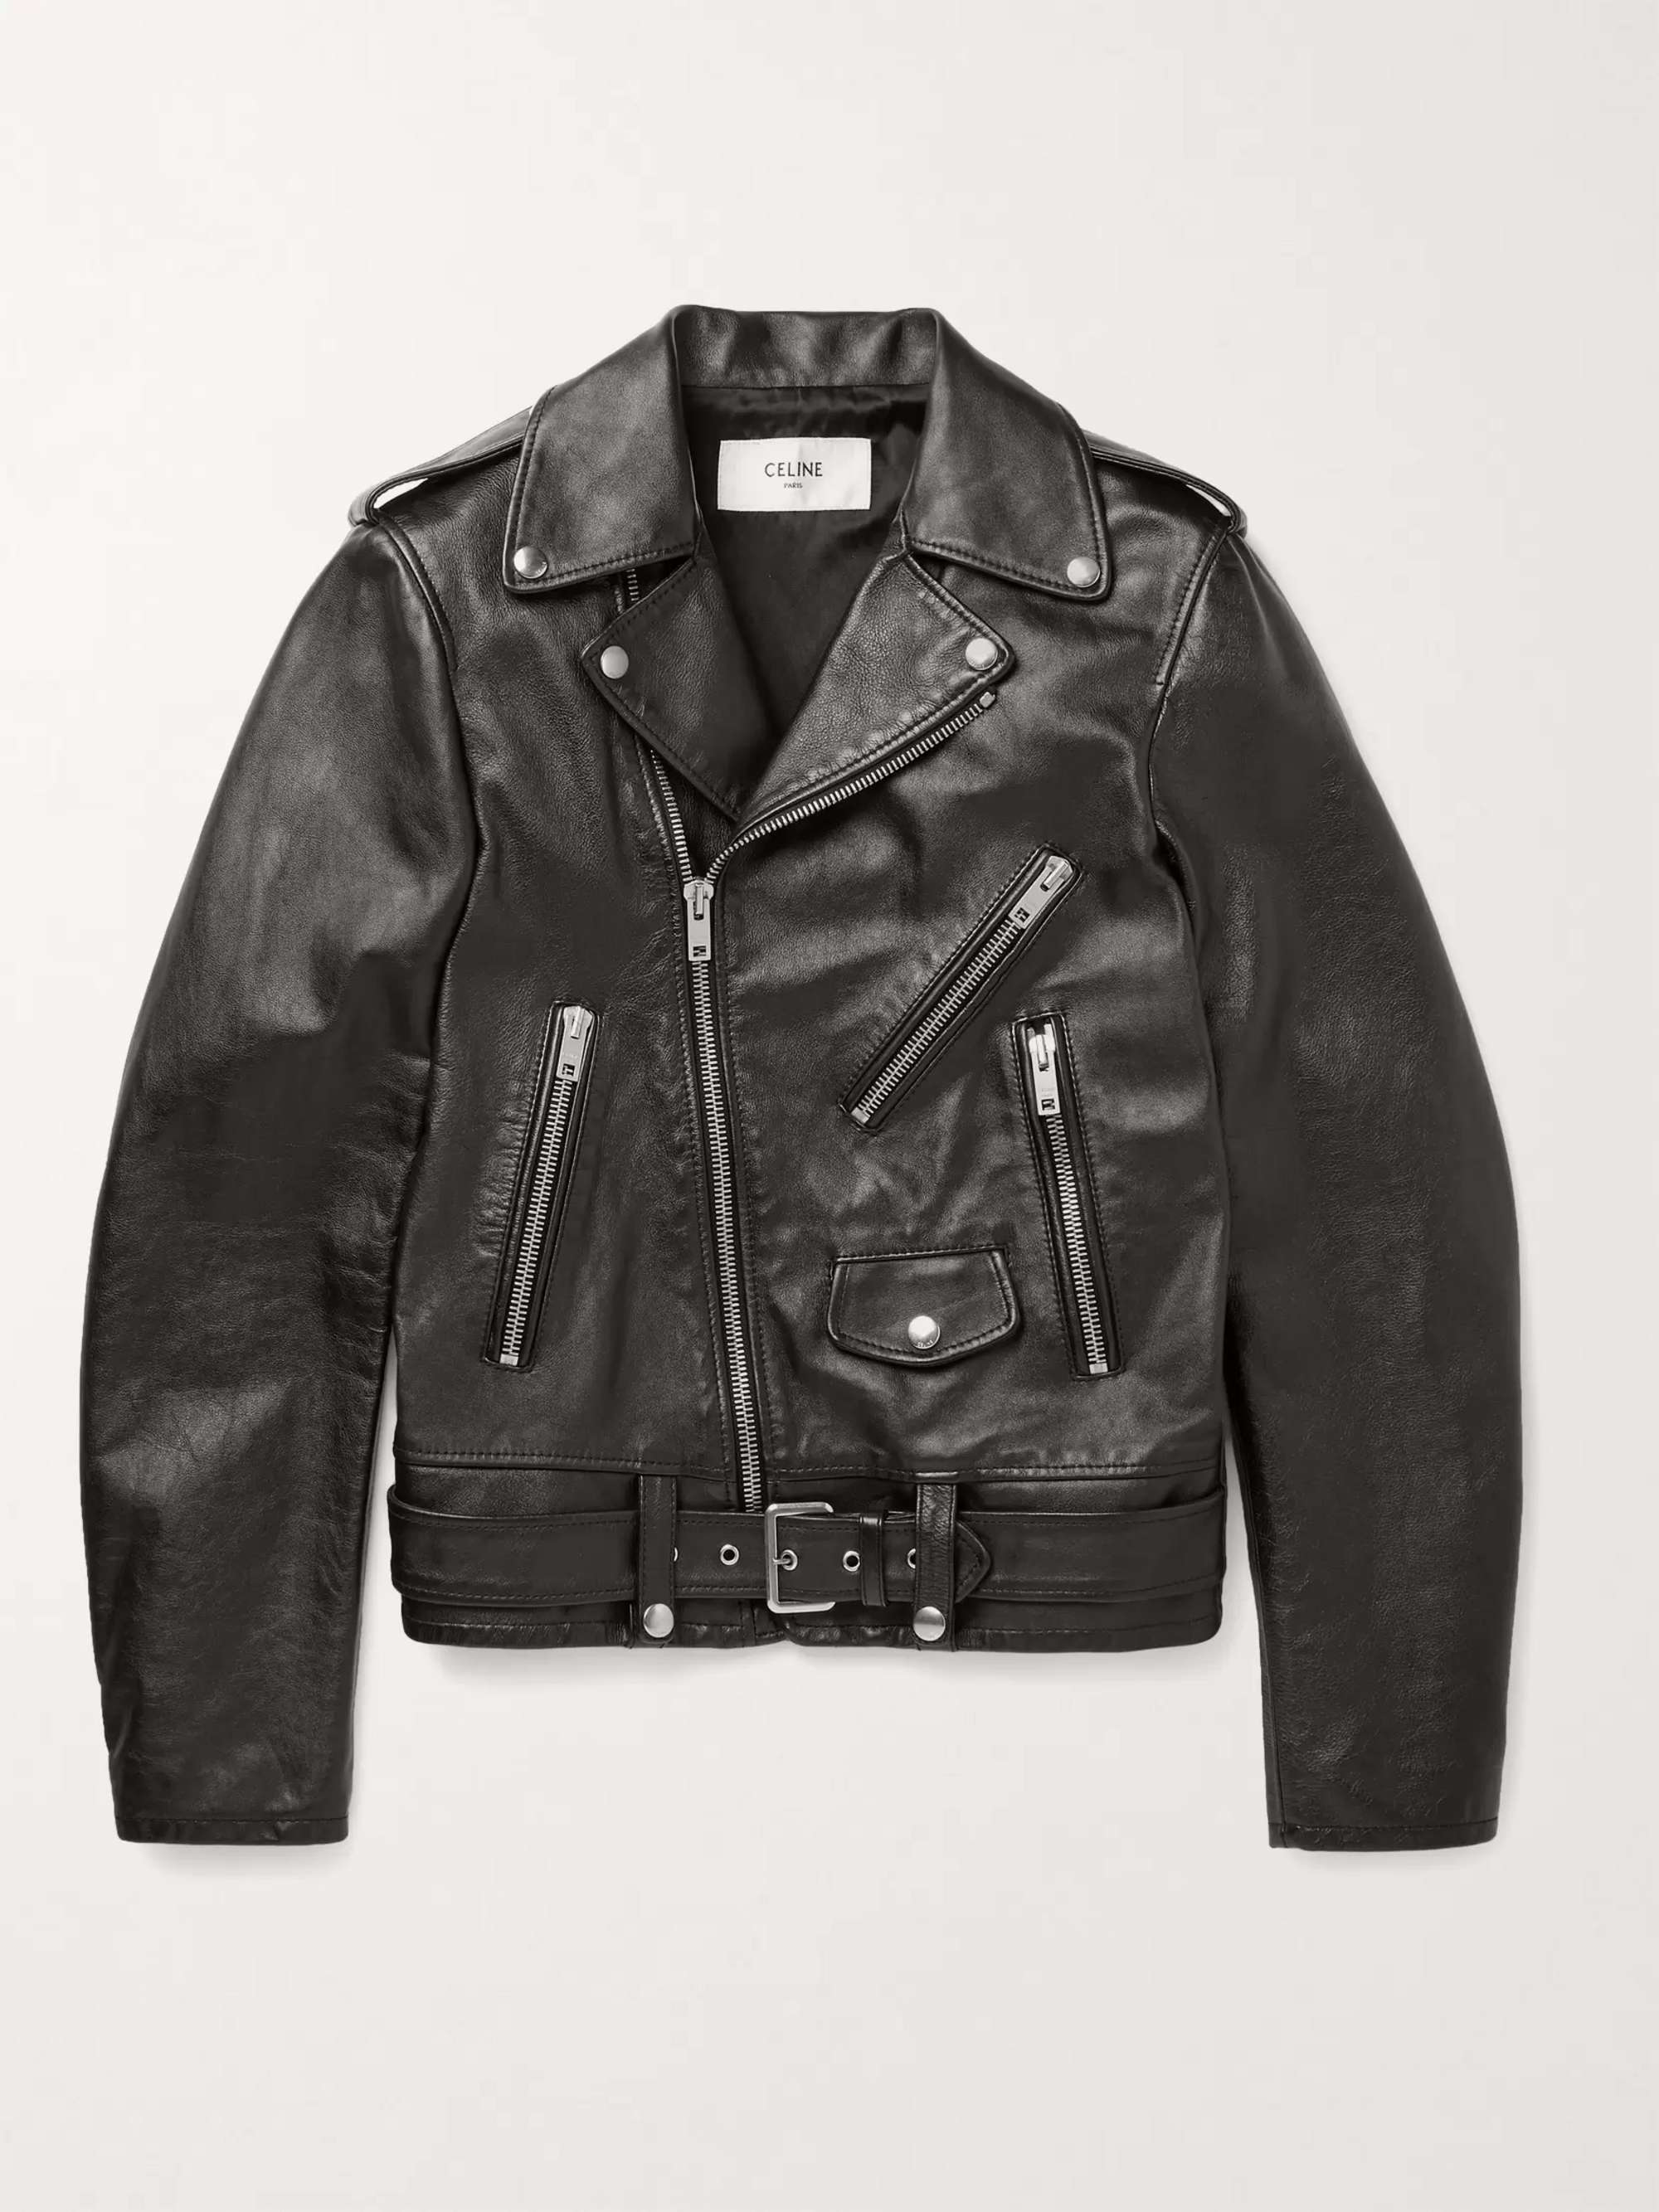 CELINE HOMME Leather Jacket for Men | MR PORTER